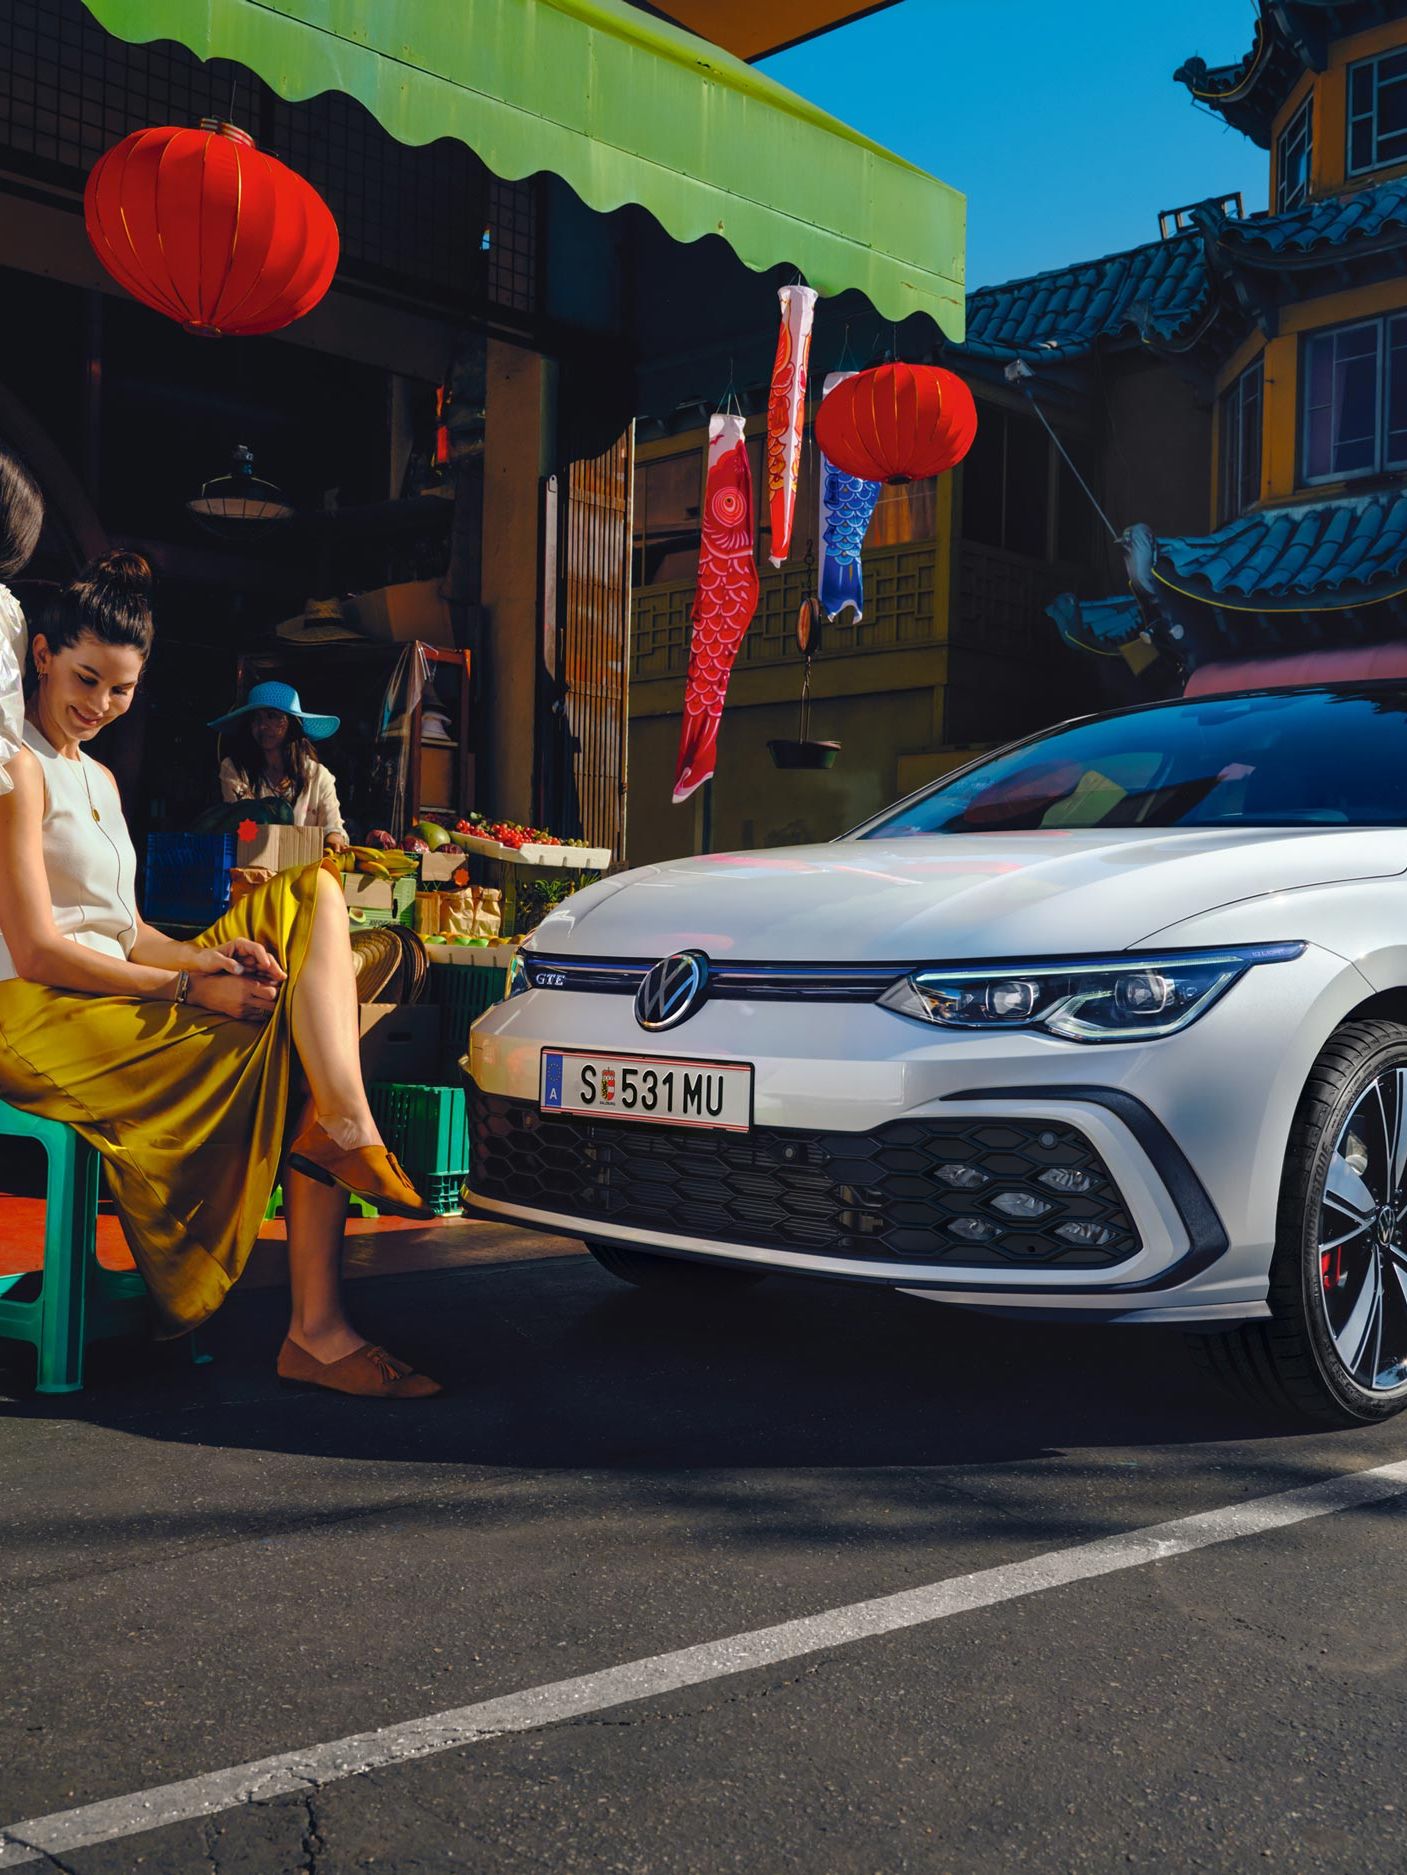 VW Golf GTE Seitenansicht steht auf einer Straße, davor sitzen 2 Frauen